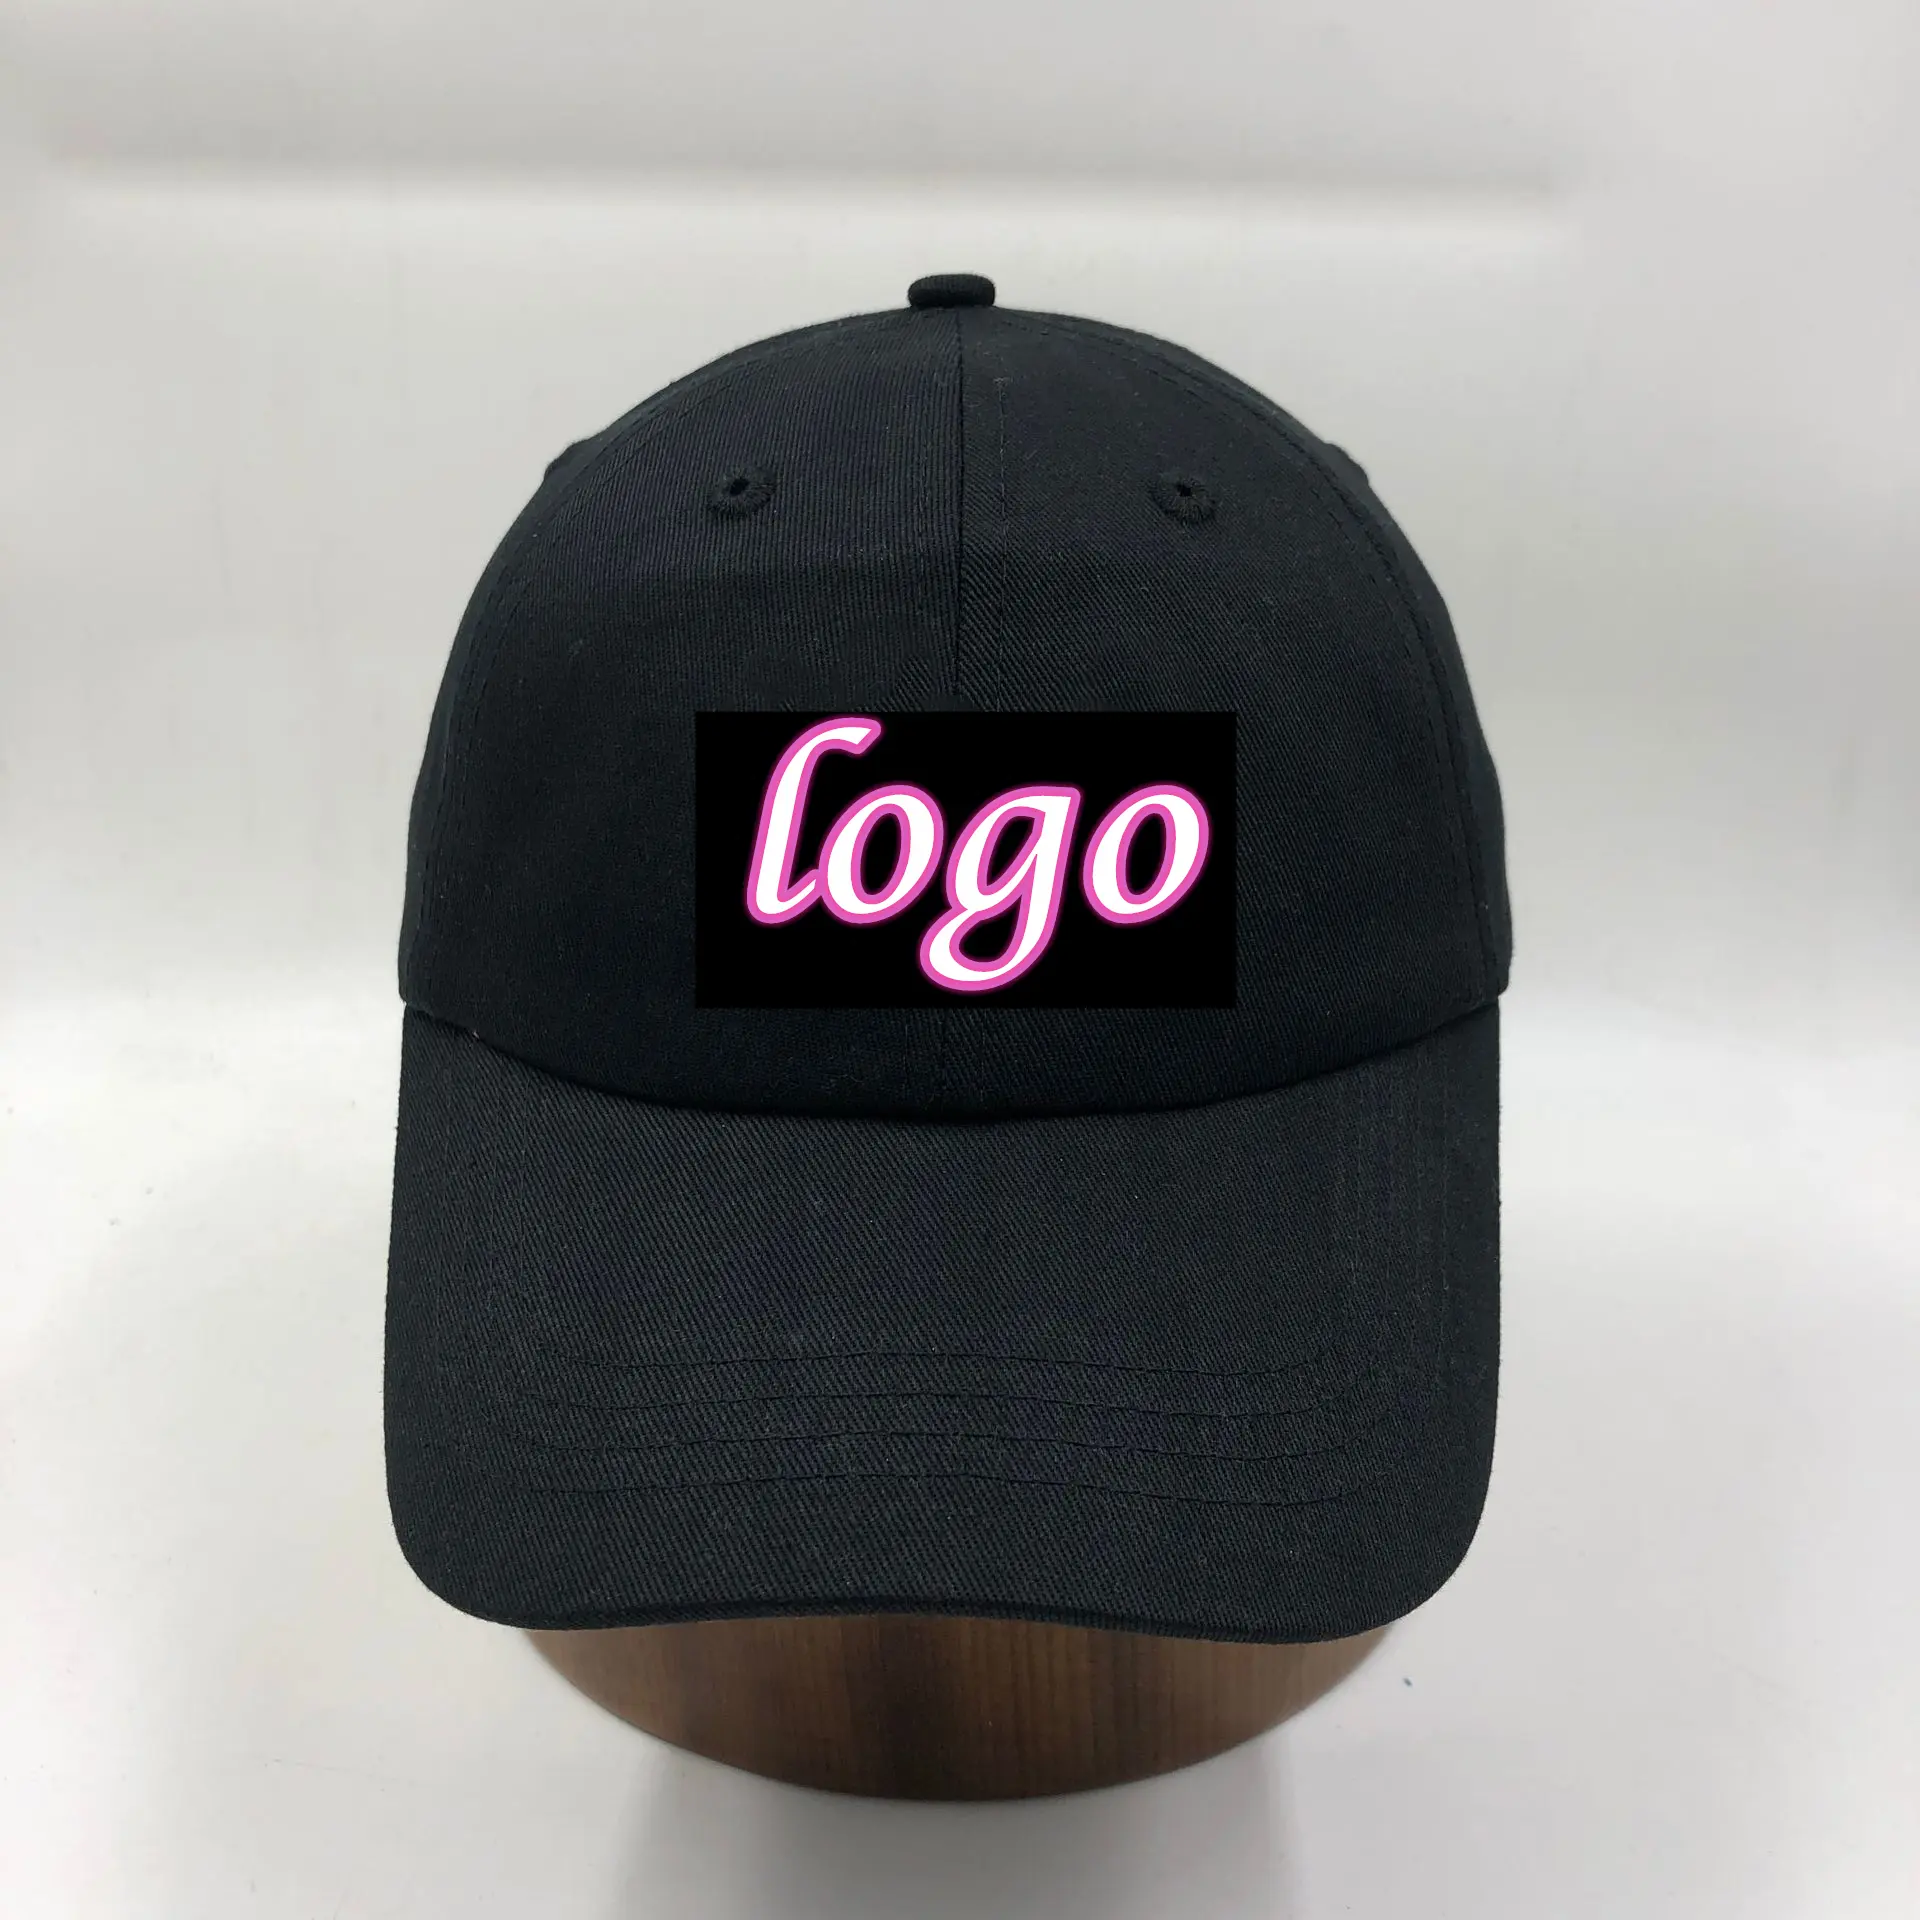 הגעה חדשה מדהים Led אור Caps, זוהר כובע מותאם אישית עם הלוגו שלך